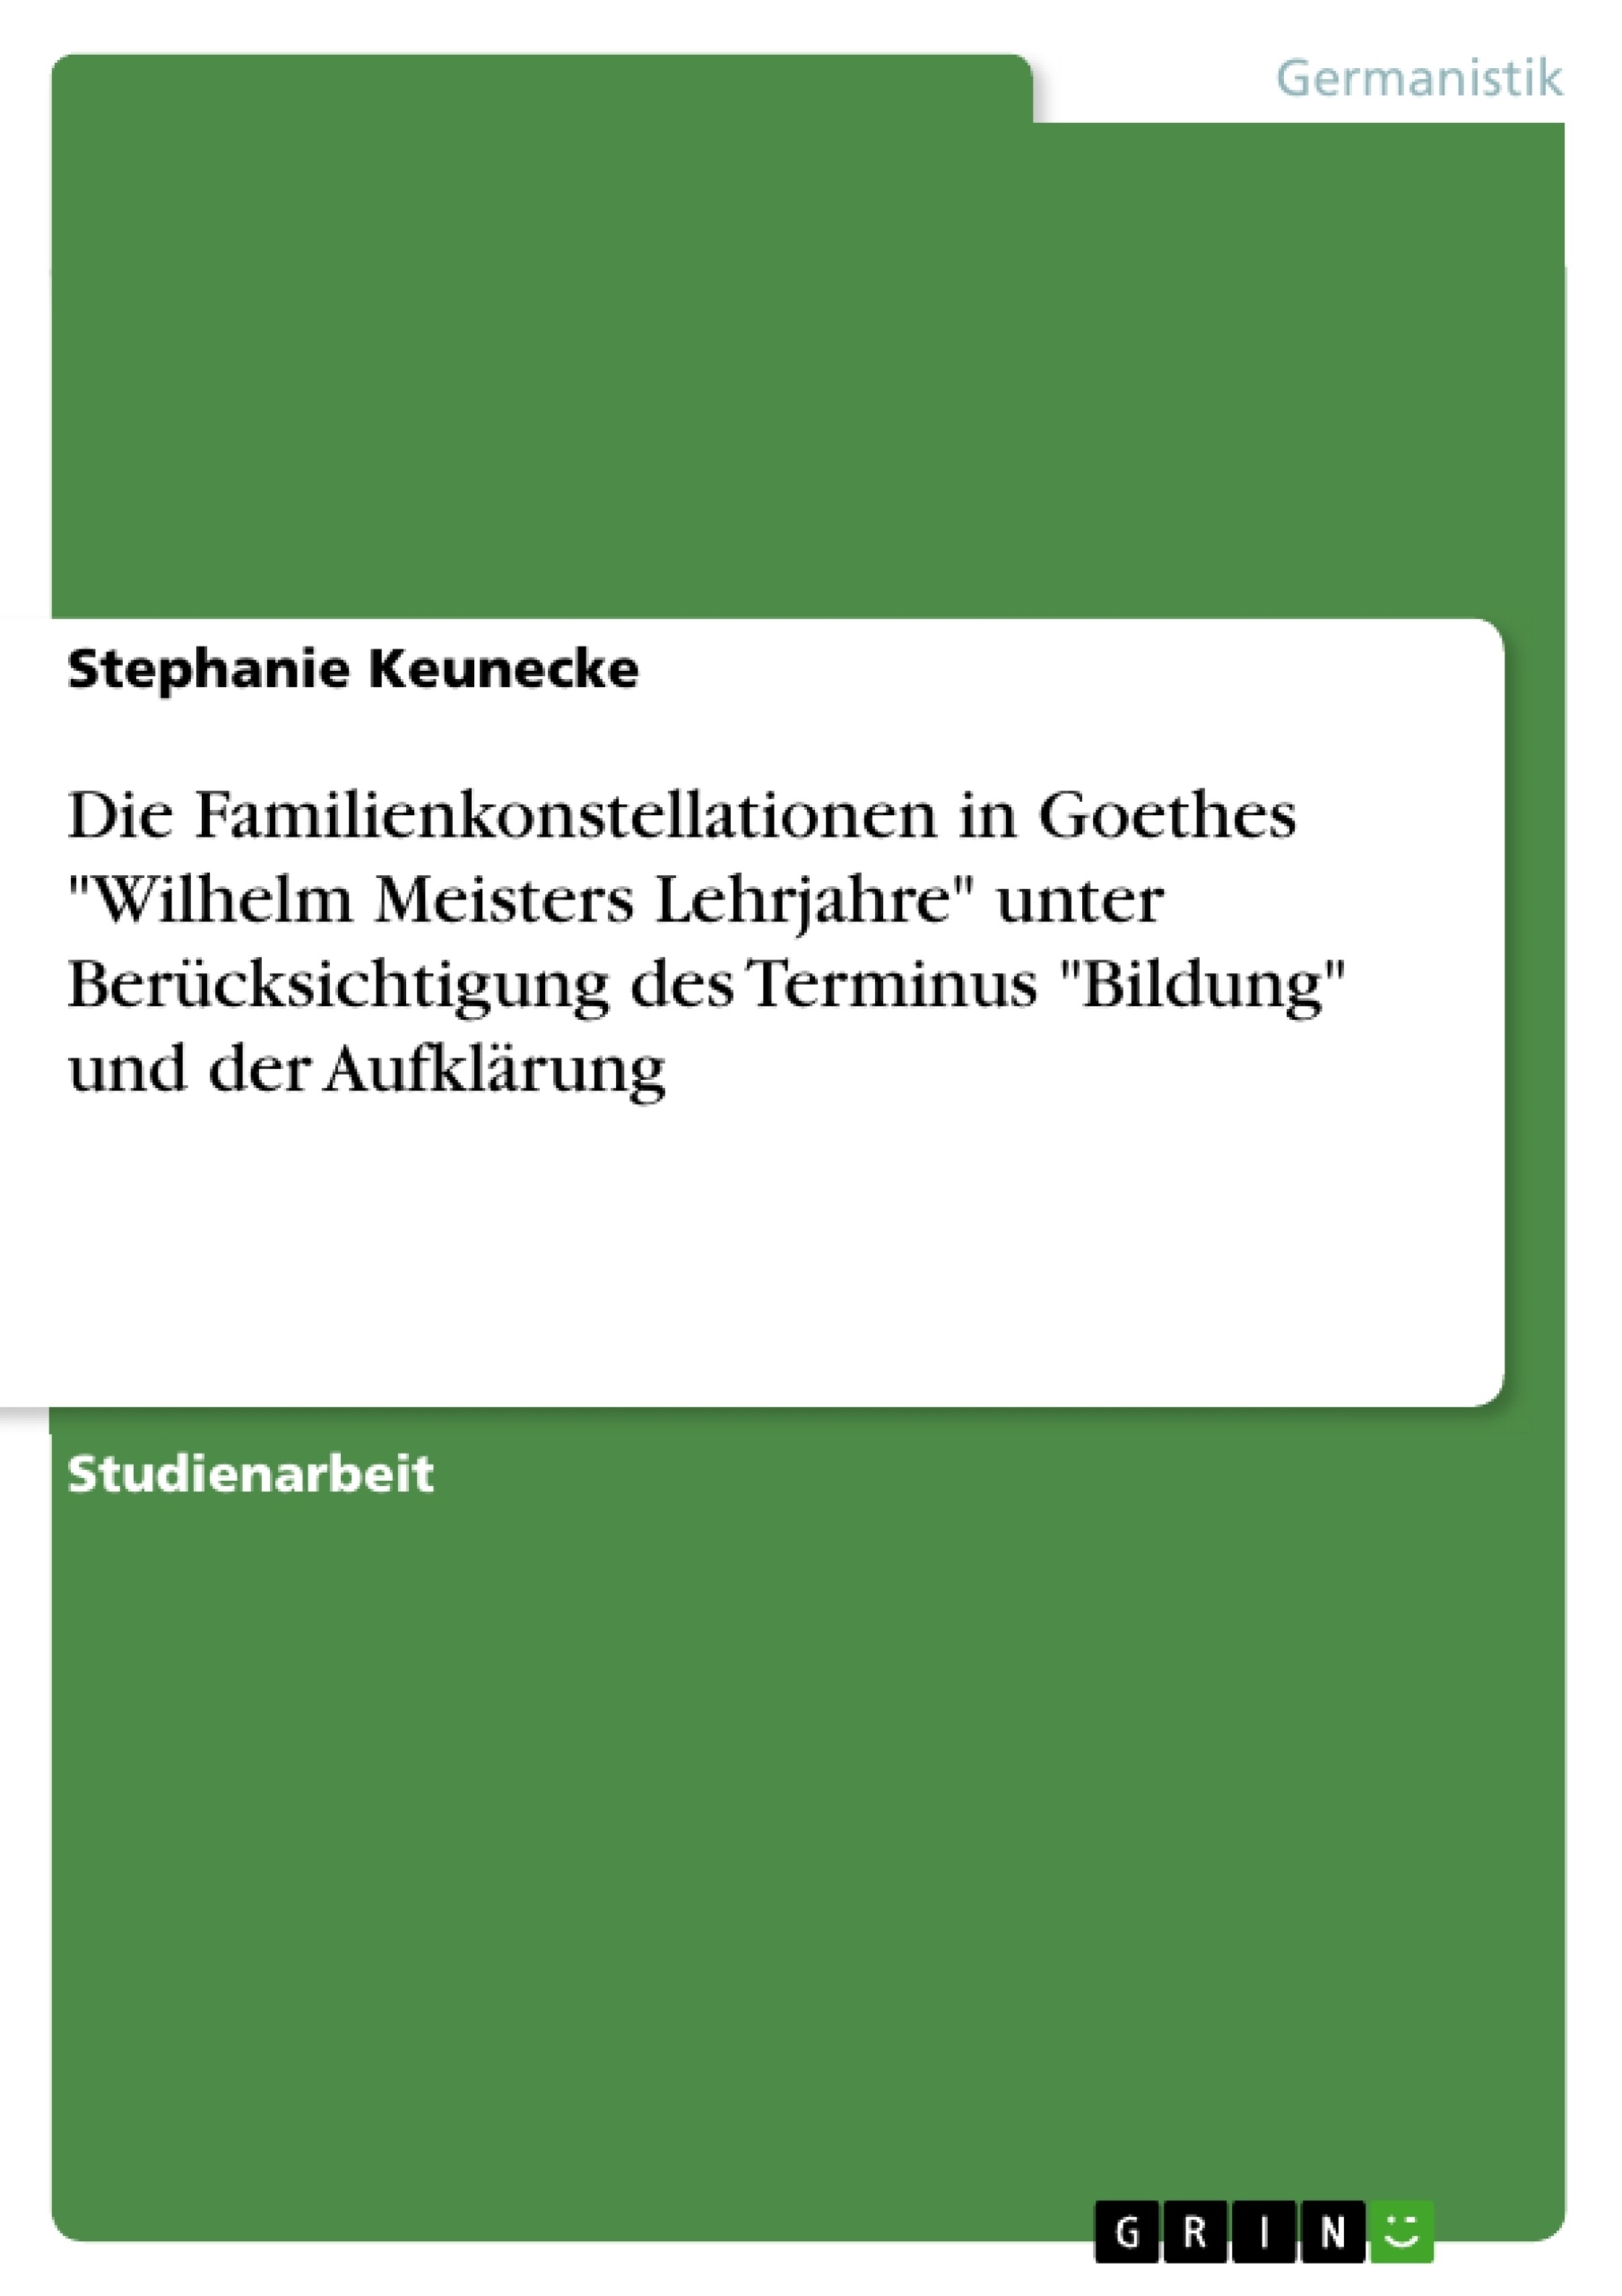 Title: Die Familienkonstellationen in Goethes "Wilhelm Meisters Lehrjahre" unter Berücksichtigung des Terminus "Bildung" und der Aufklärung